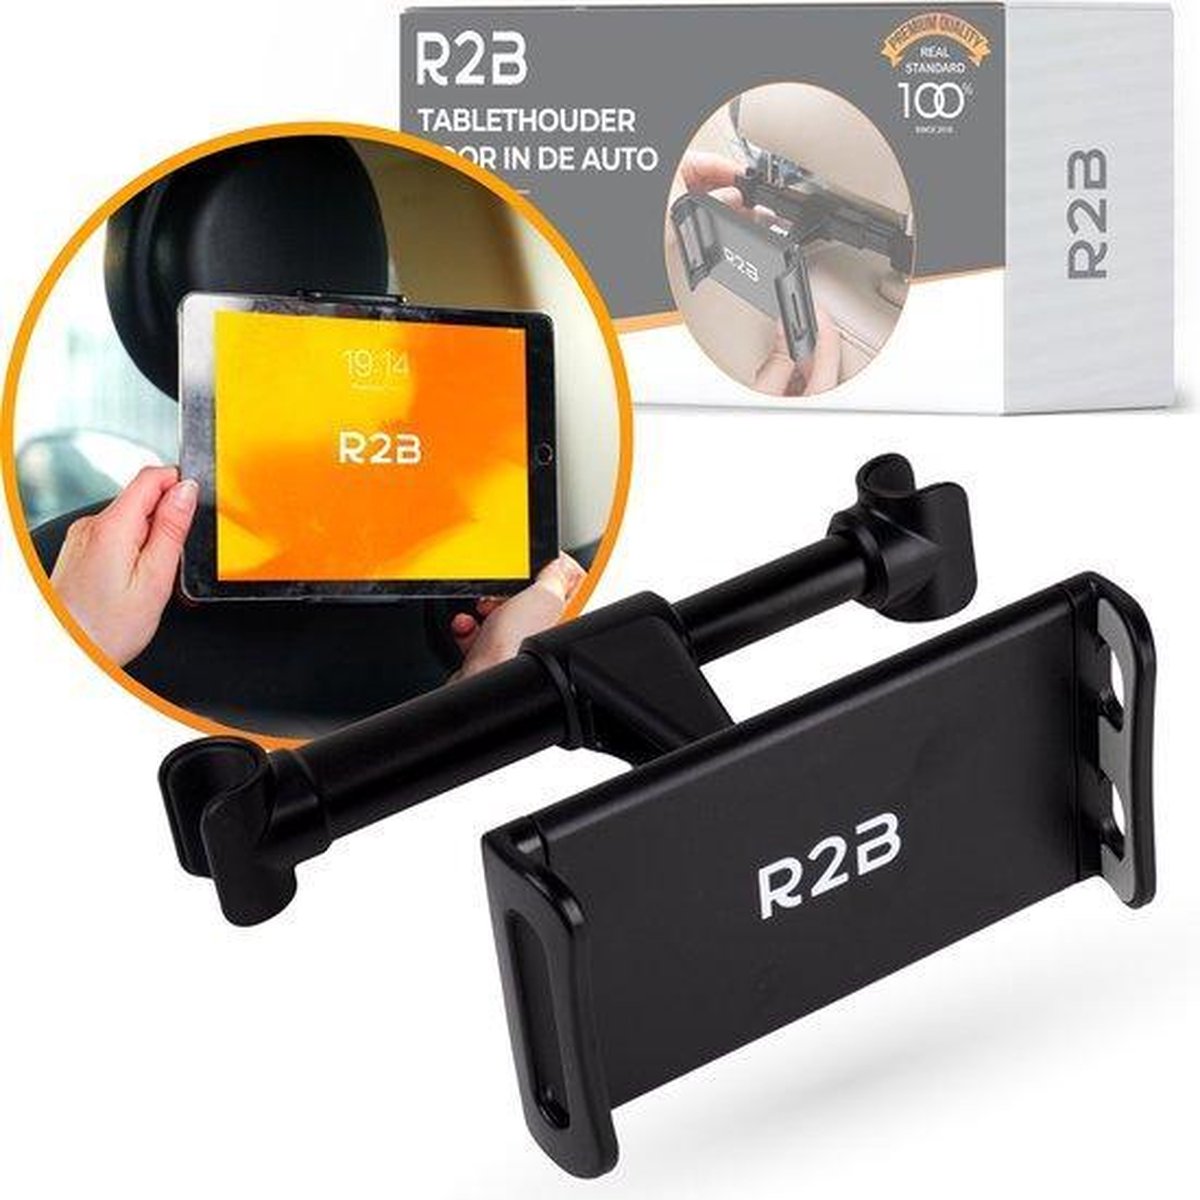 R2B® Stevige Tablet houder auto hoofdsteun - Tablethouder geschikt voor Tablet, telefoon, Switch en meer! - Model Apeldoorn